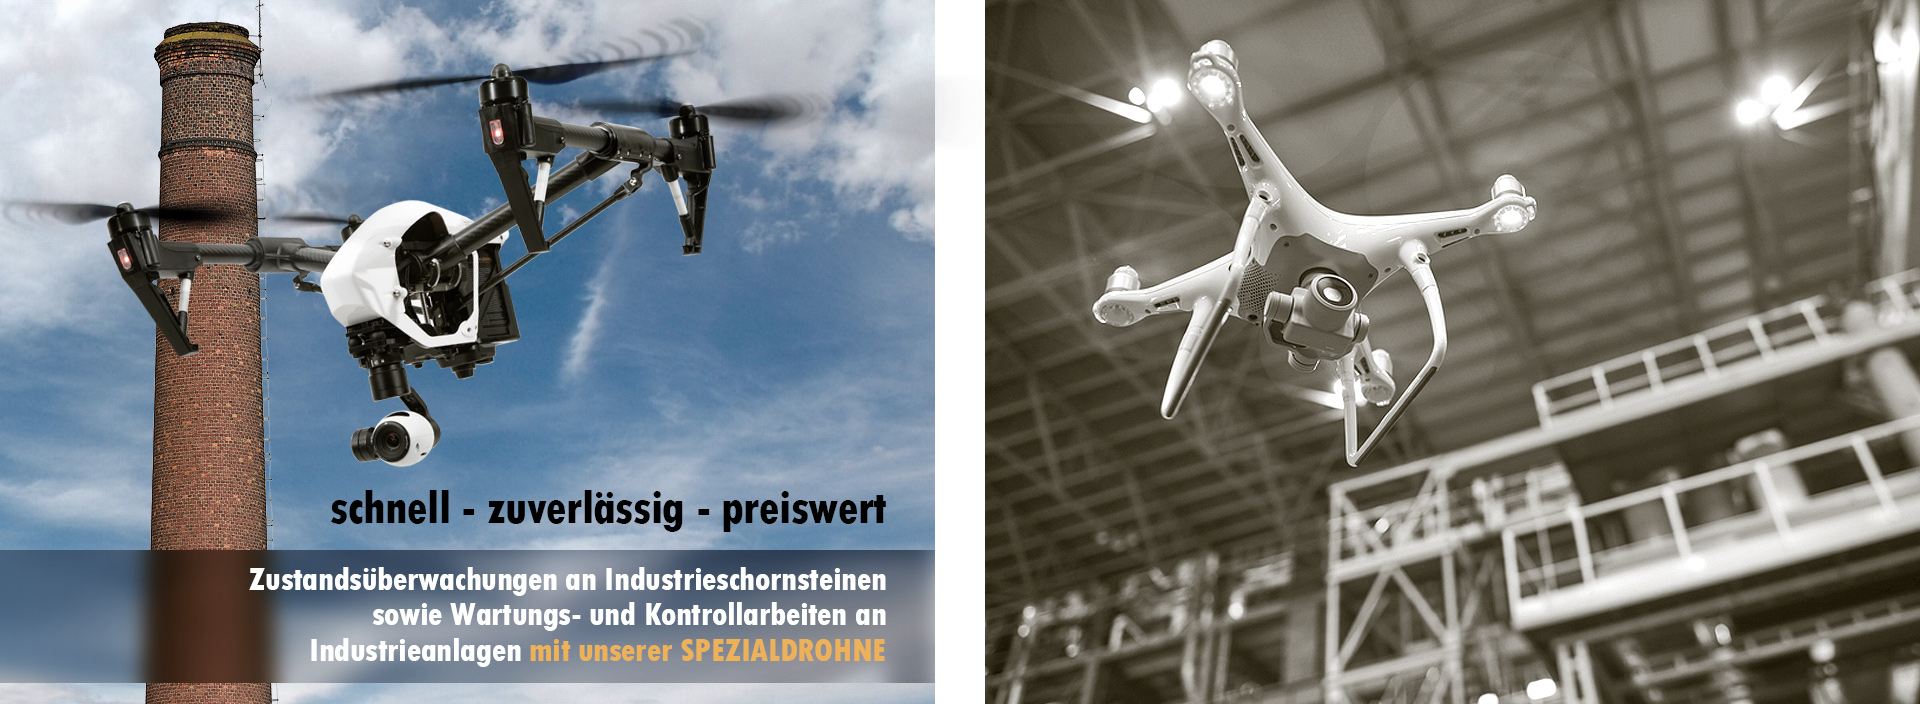 zwei verbundene Bilder Drohnenflug um einen Schornstein und in einer Lagerhalle